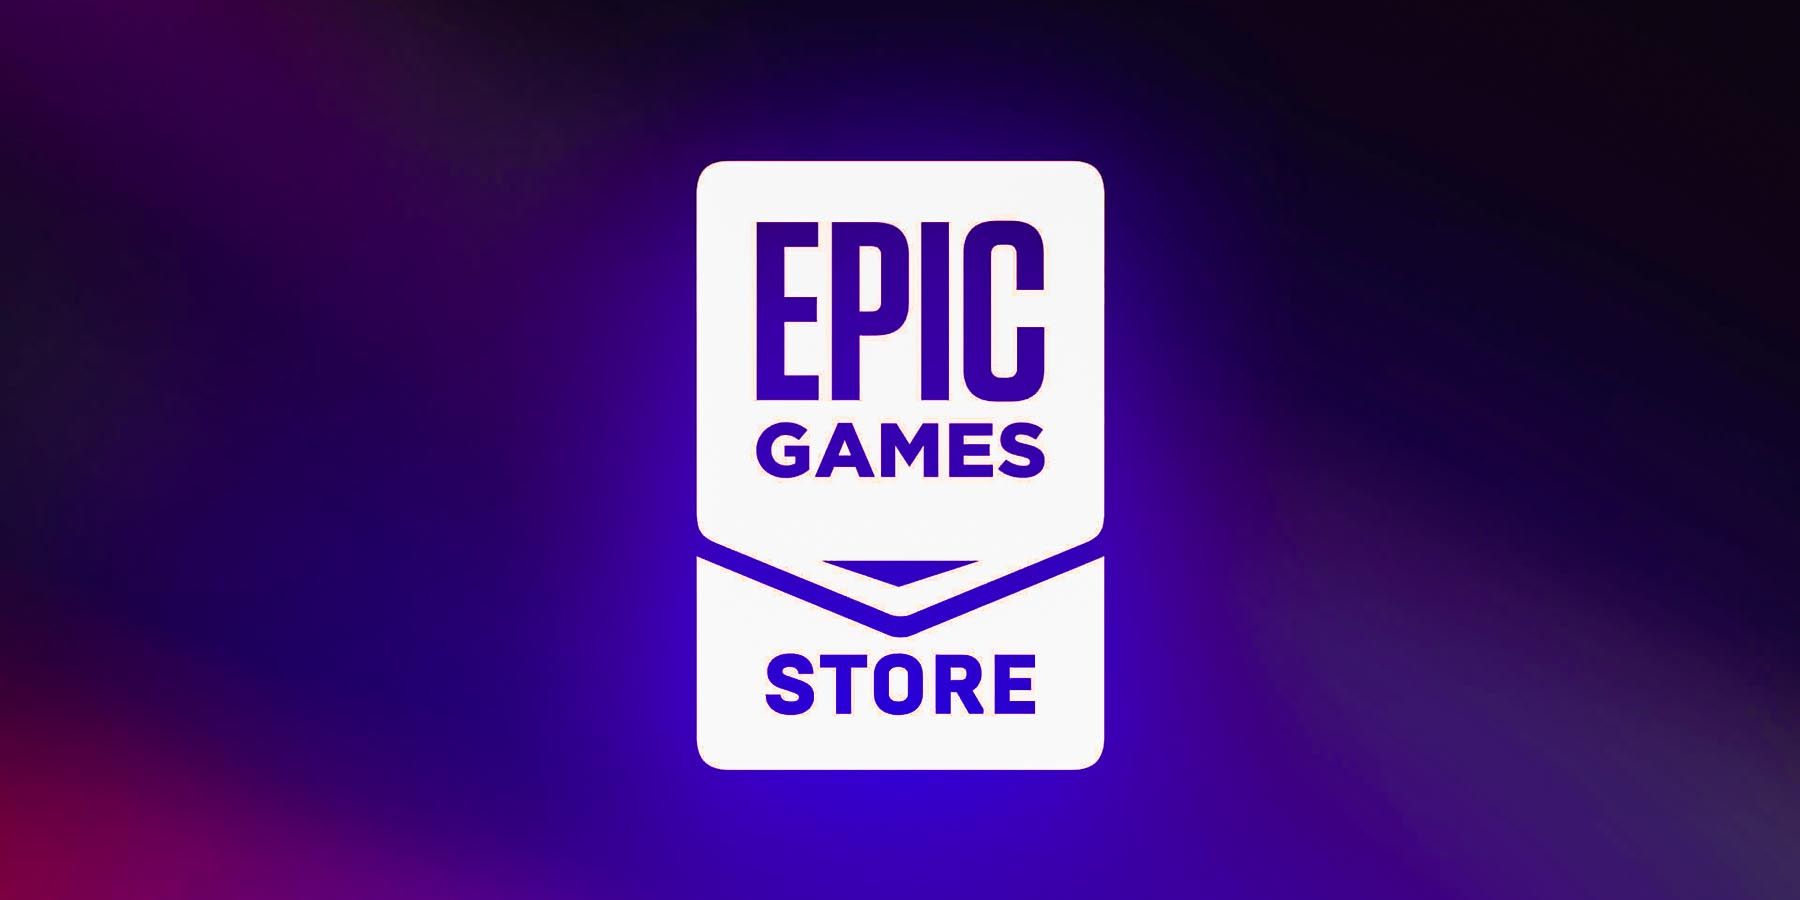 Epic Games Store 23 ივნისისთვის ორი უფასო თამაშია განმარტებული